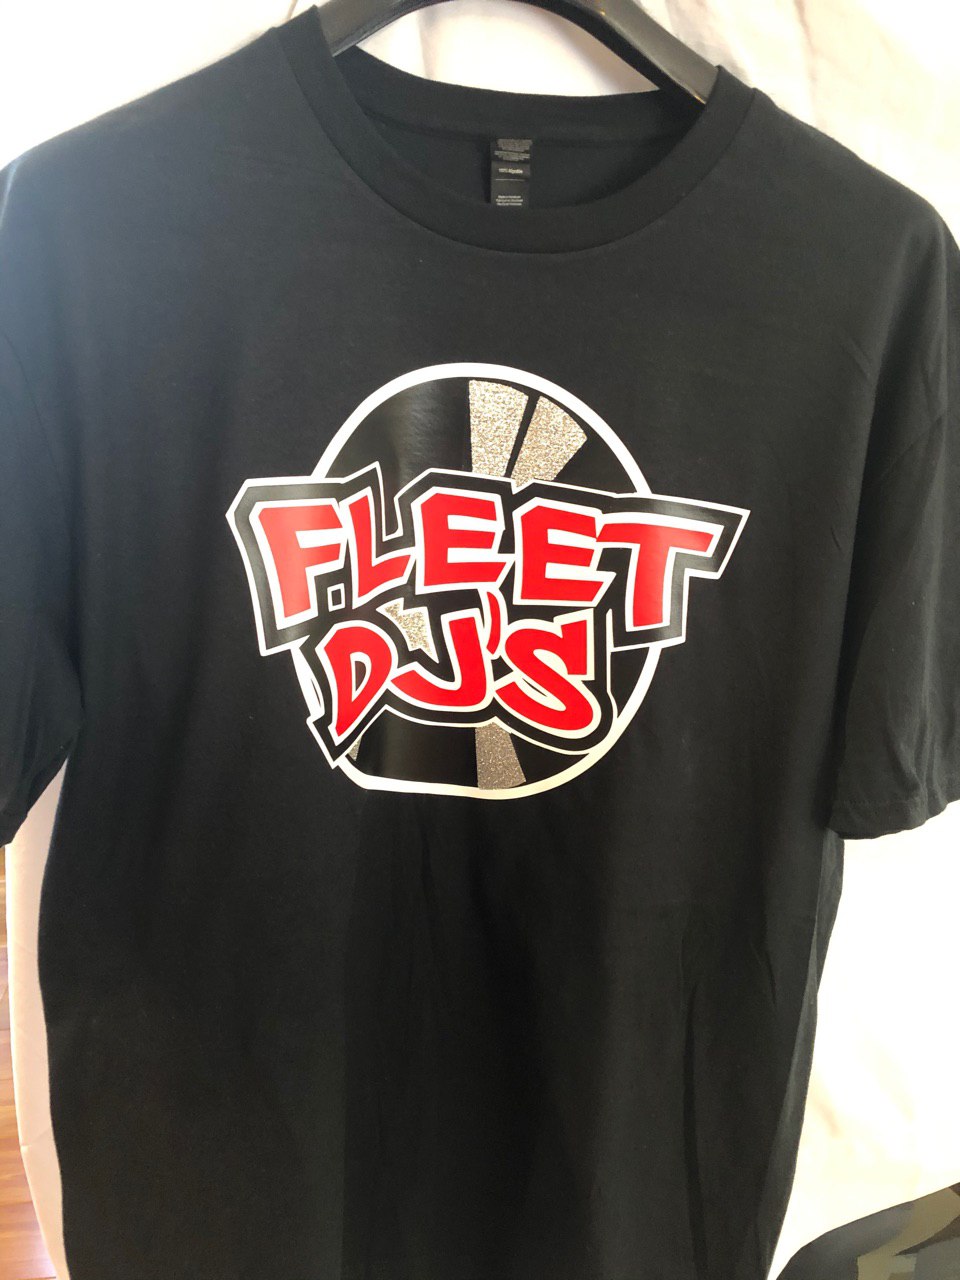 Basic Fleet Shirt – The Fleet DJ's